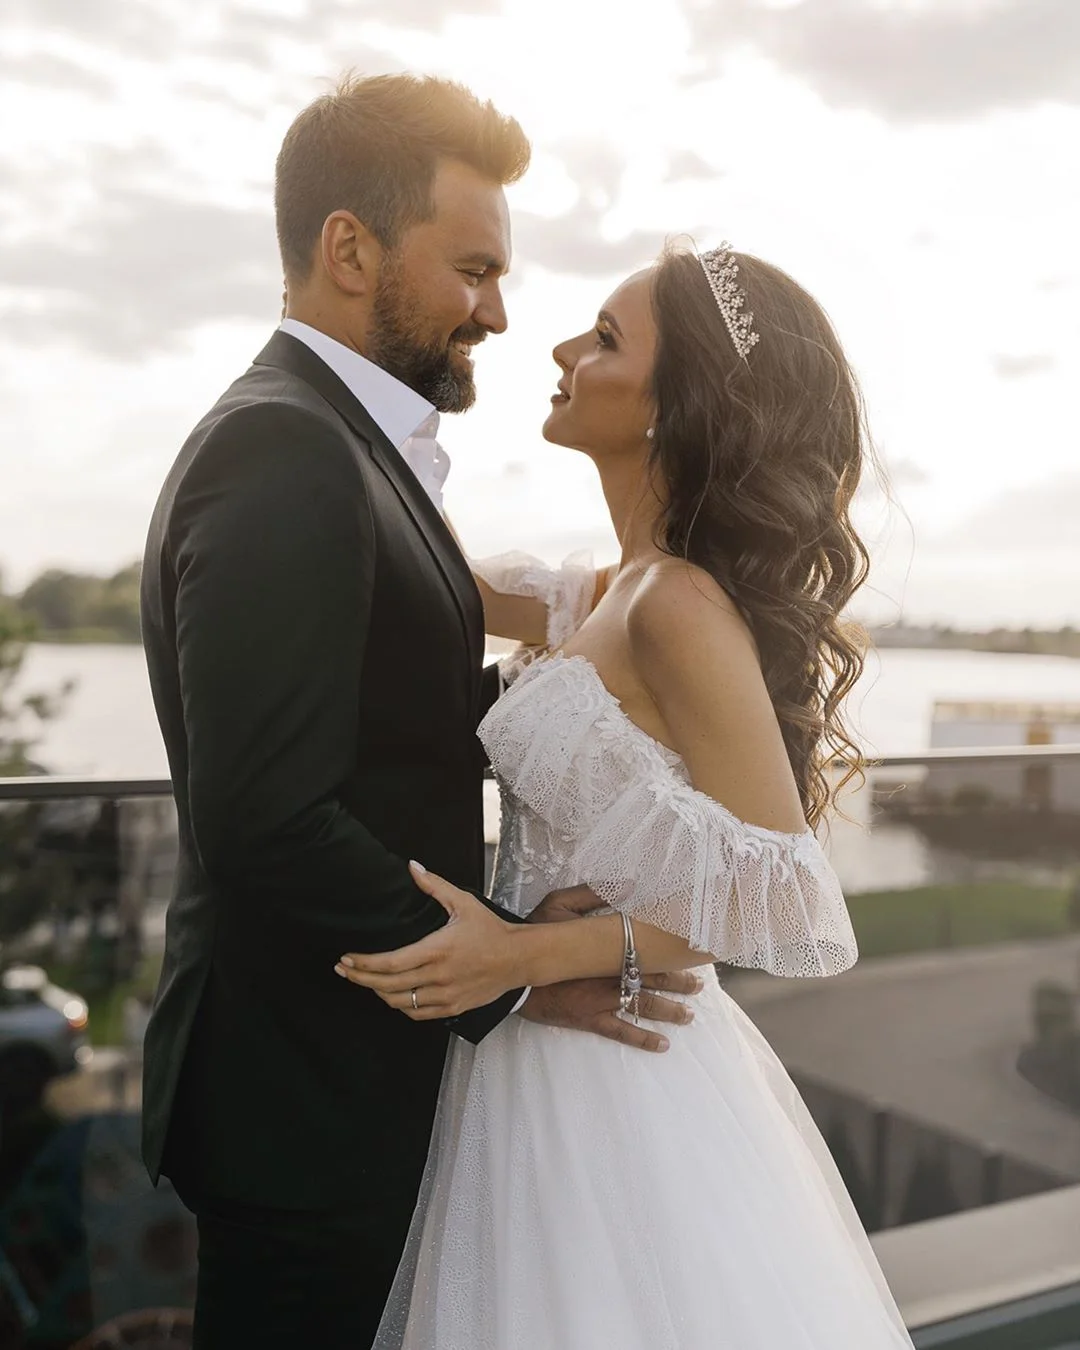 Тимур Мирошниченко с любимой снялись в свадебной фотосессии через два года после женитьбы - фото 441152